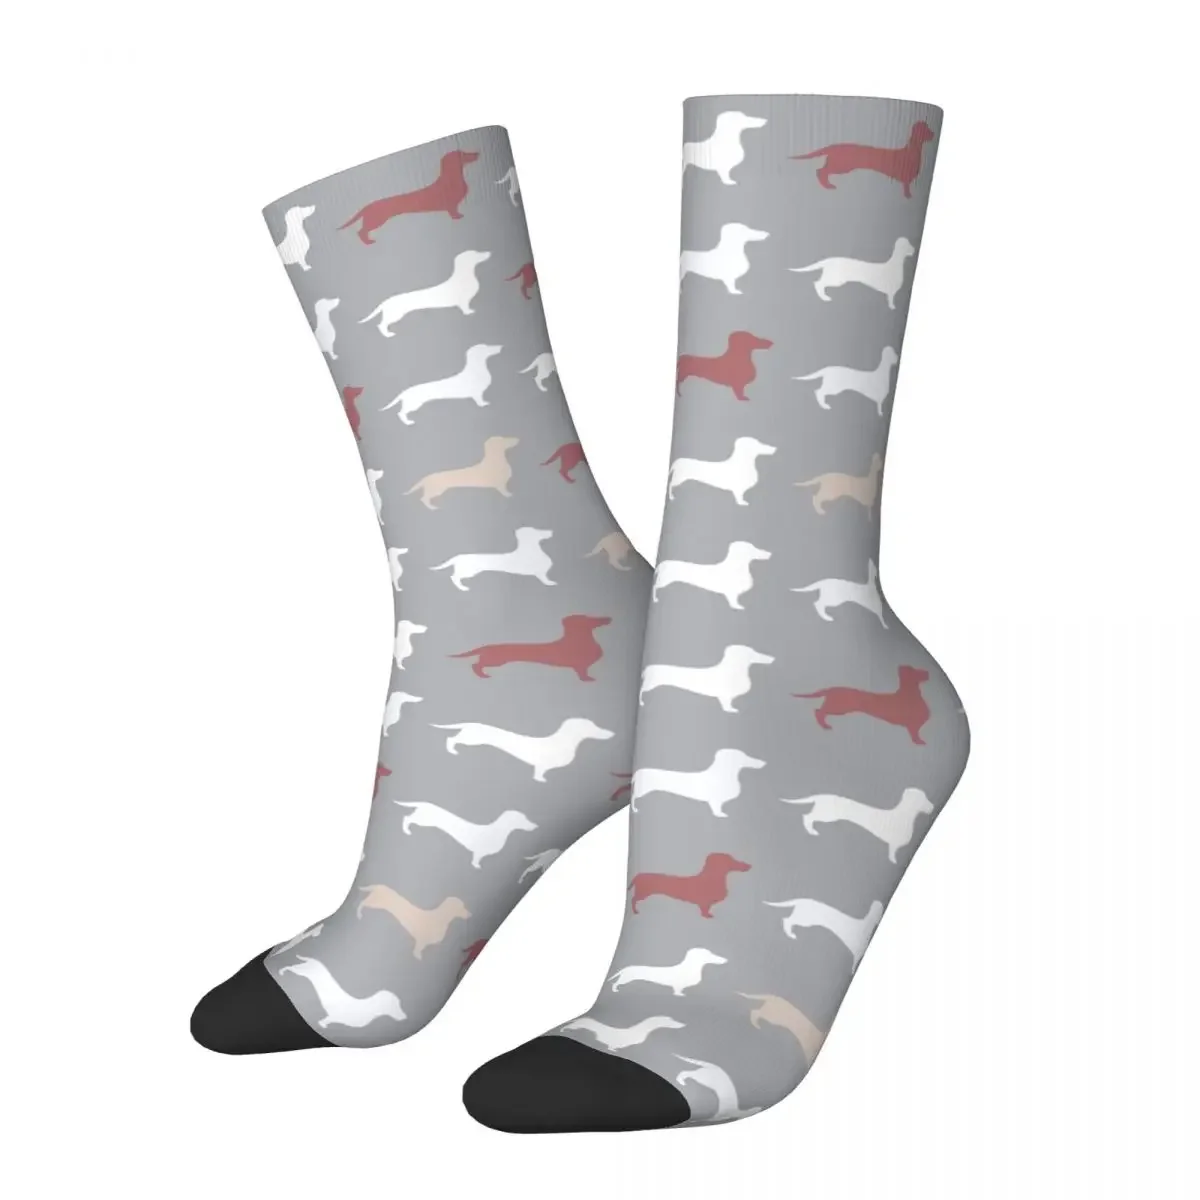 

Dachshund Dog Casual Spring Summer Middle Tube Socks Gift Novelty Street Style Crazy Socks for Men Women